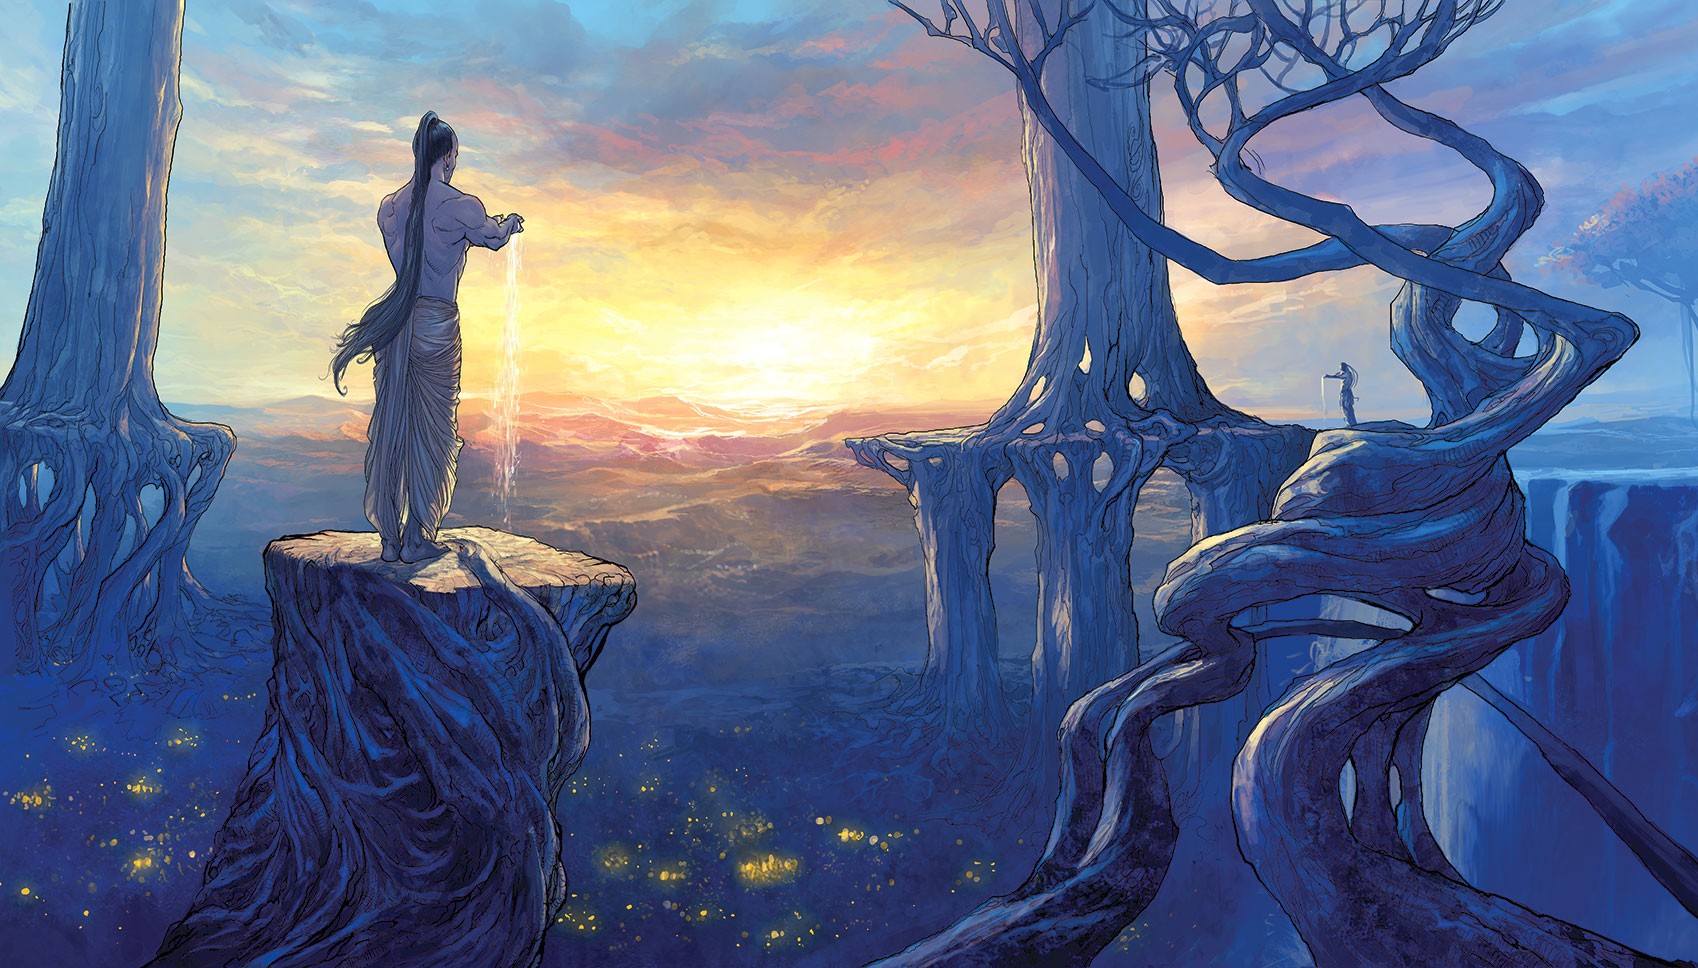 Anime 1698x968 fantasy art artwork sunlight fantasy men landscape trees sky standing men